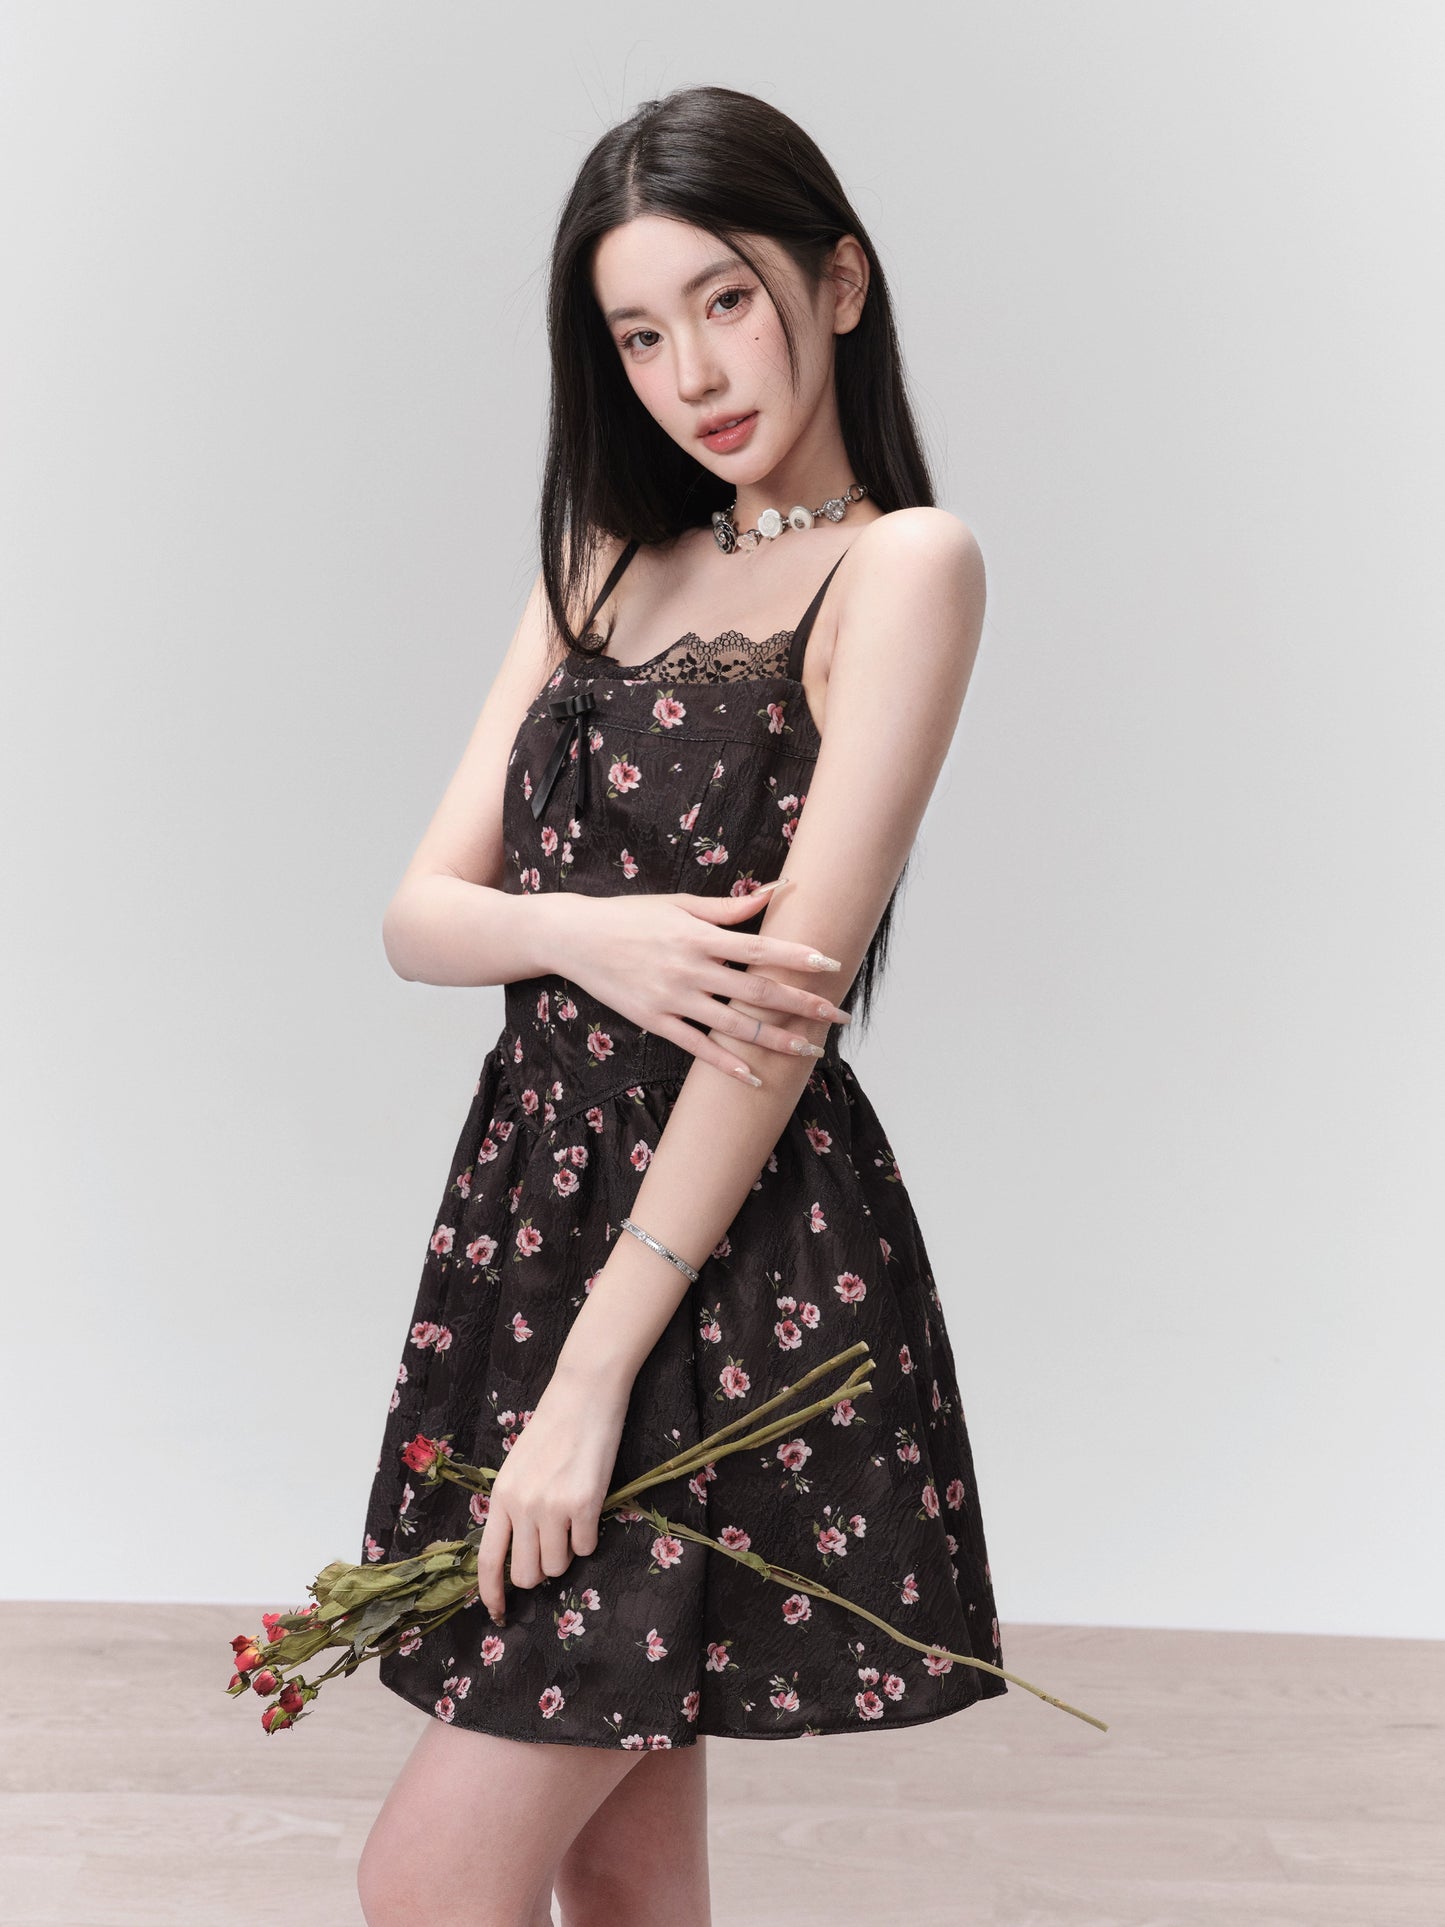 [现货] Fragile Shop Falling Rose Garden Delicate Floral Slip Dress Temperament Romantic Date Dress